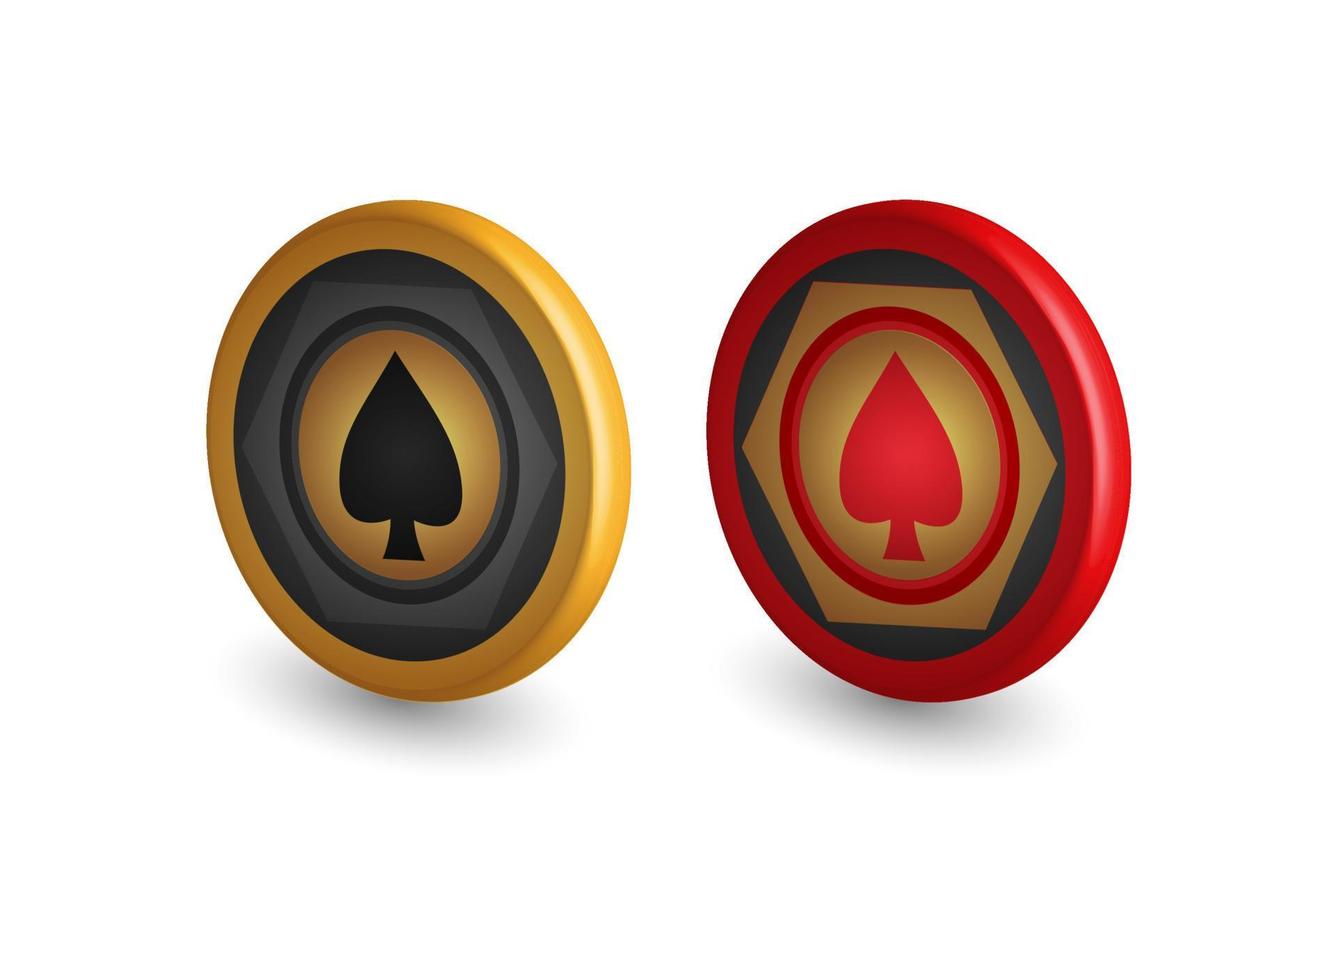 fichas de póquer doradas y rojas, con símbolo de espadas, elementos de diseño de juegos, ilustración vectorial 3d, vector